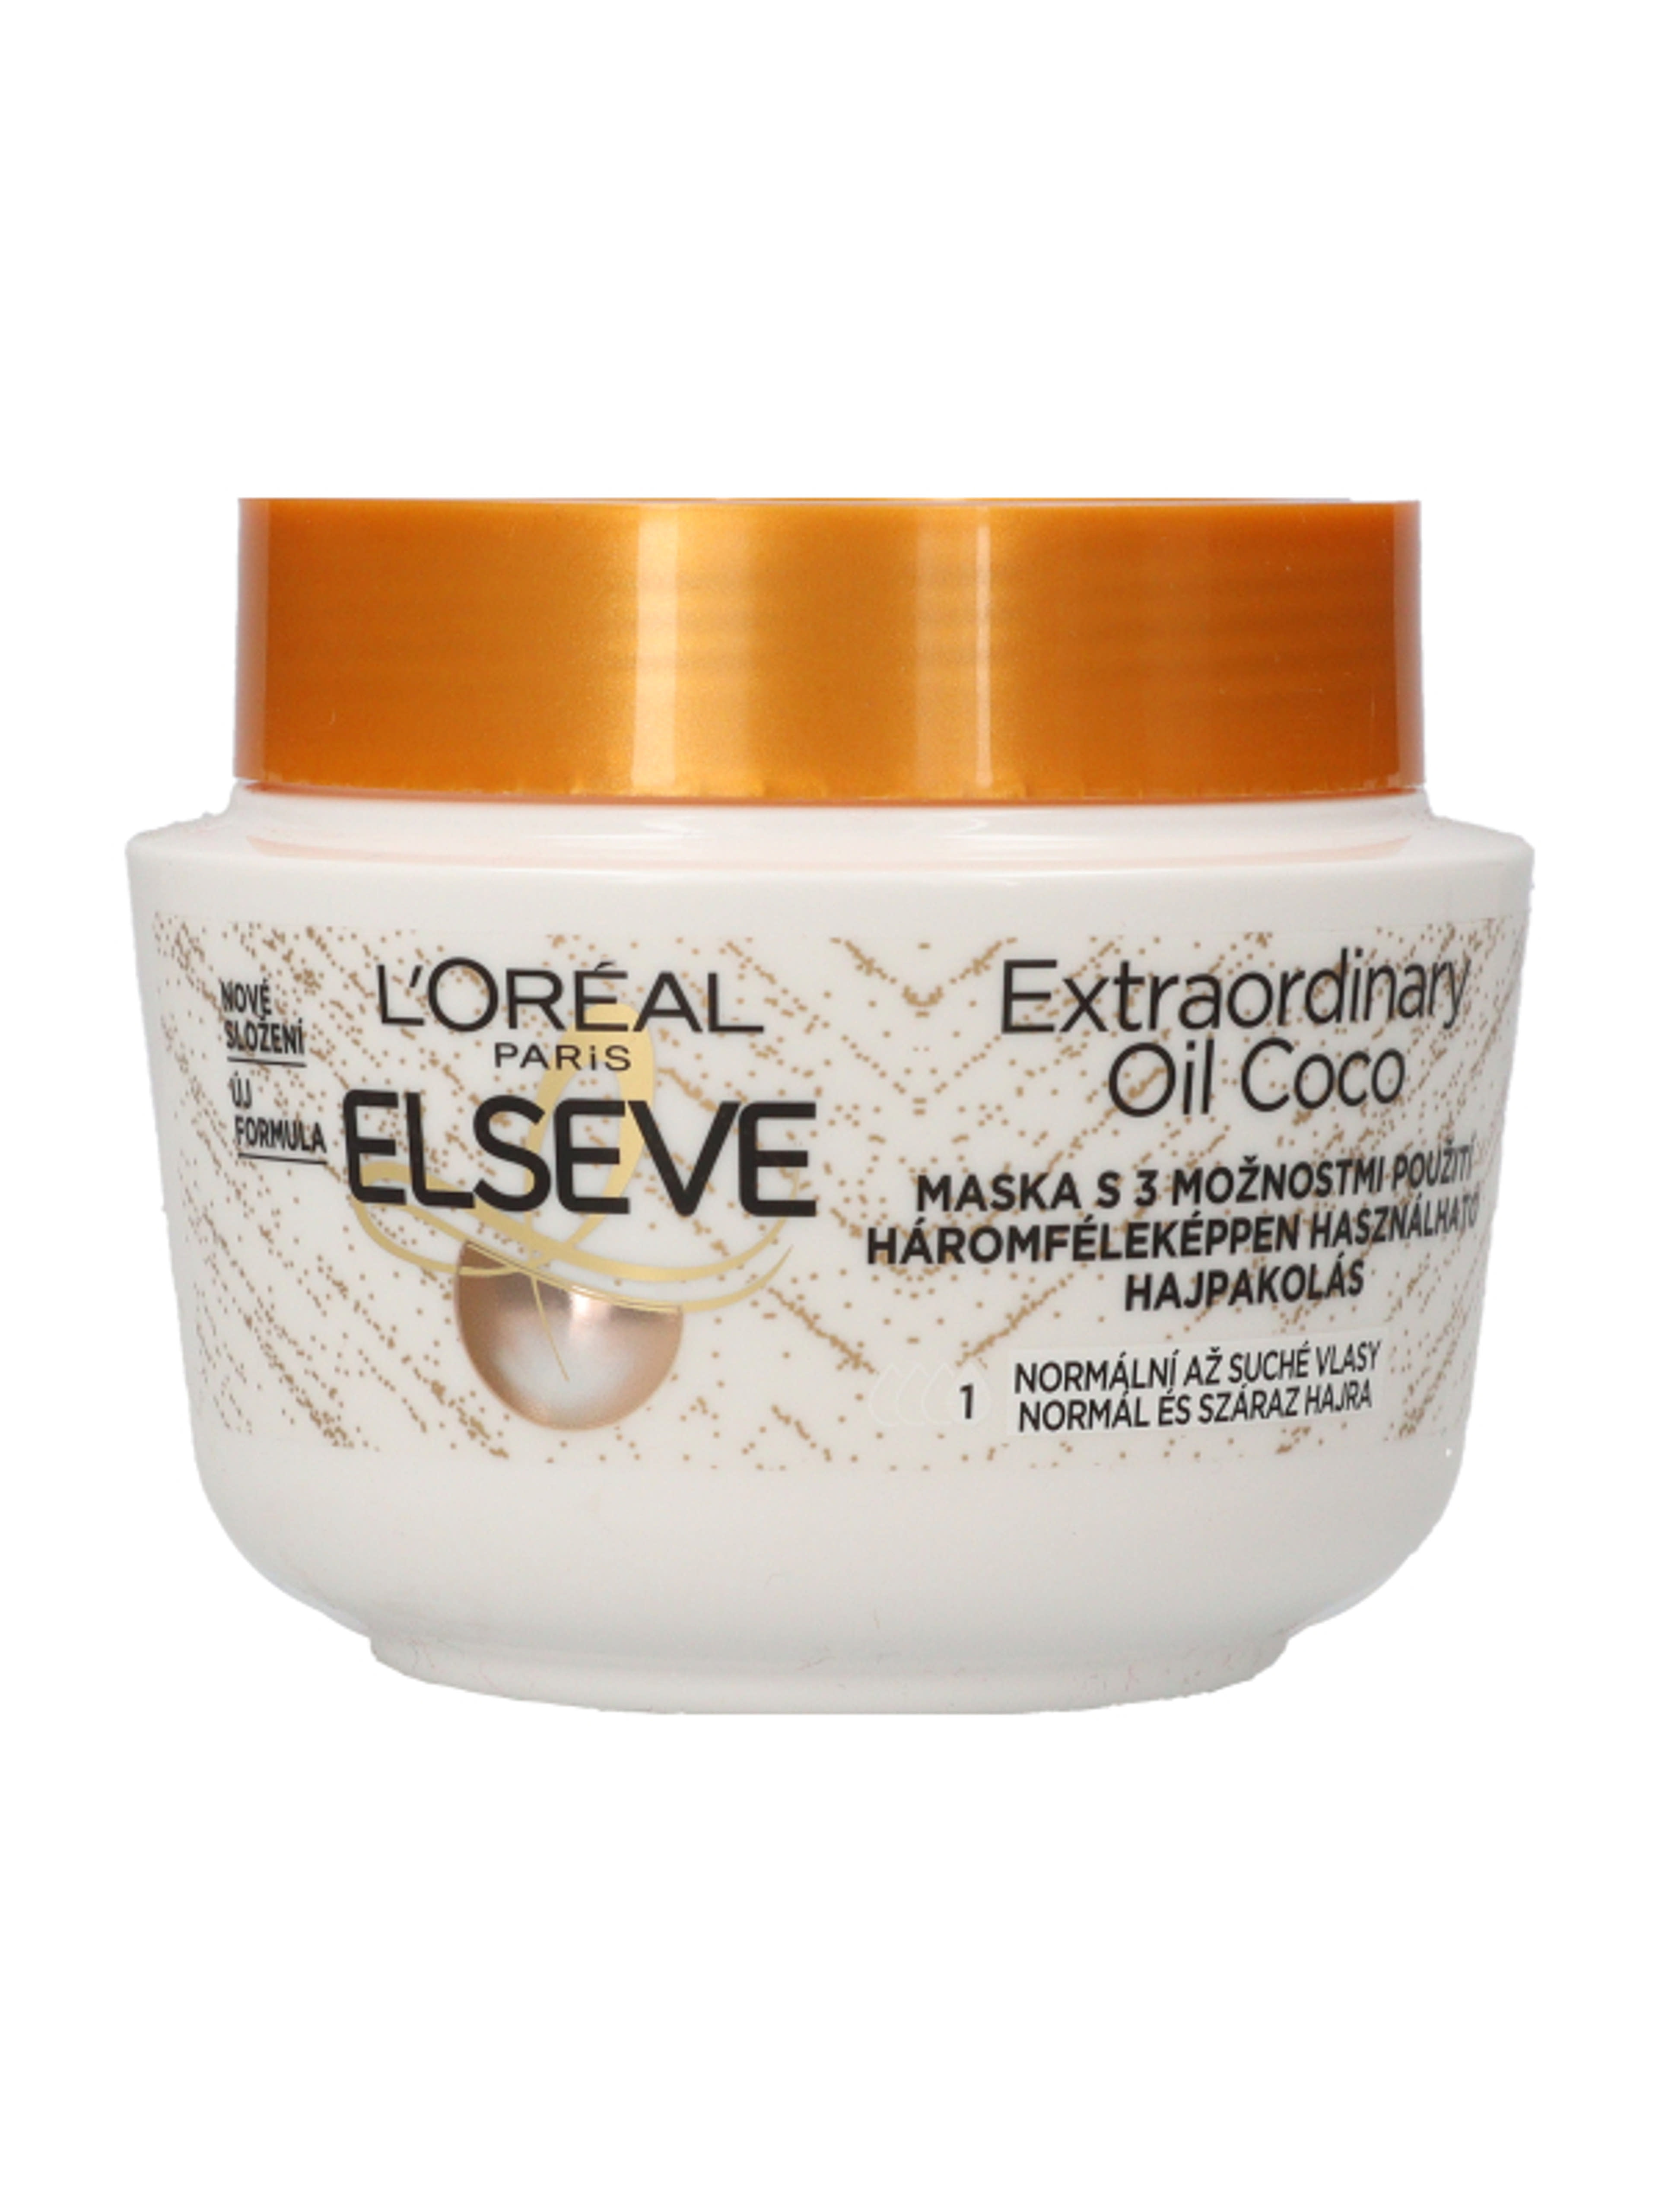 L'Oréal Paris Elseve Extraordinary Oil Coco hajpakolás kókuszolajjal - 300 ml-2